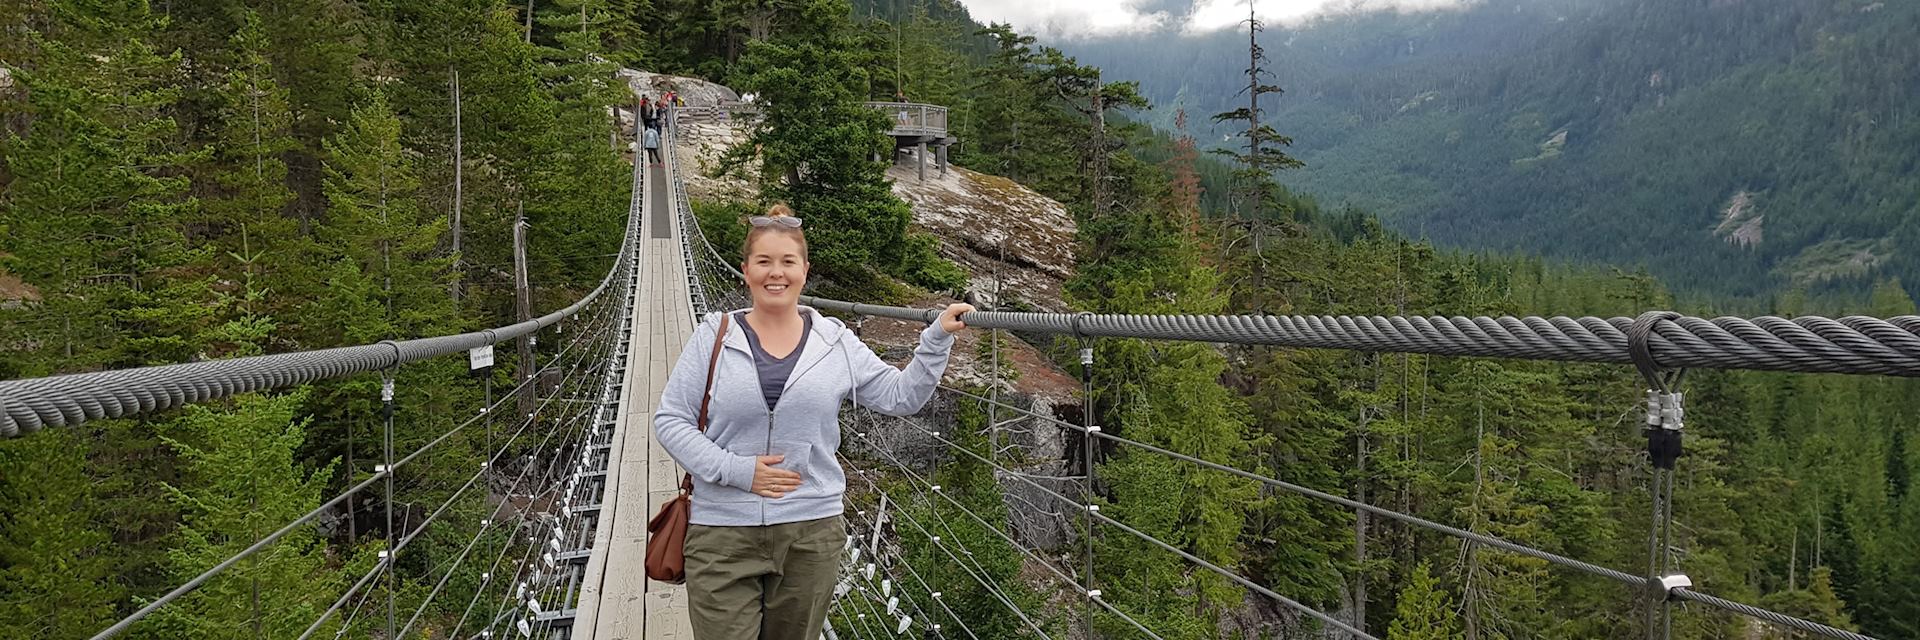 Fiona on Squamish Suspension Bridge, British Columbia